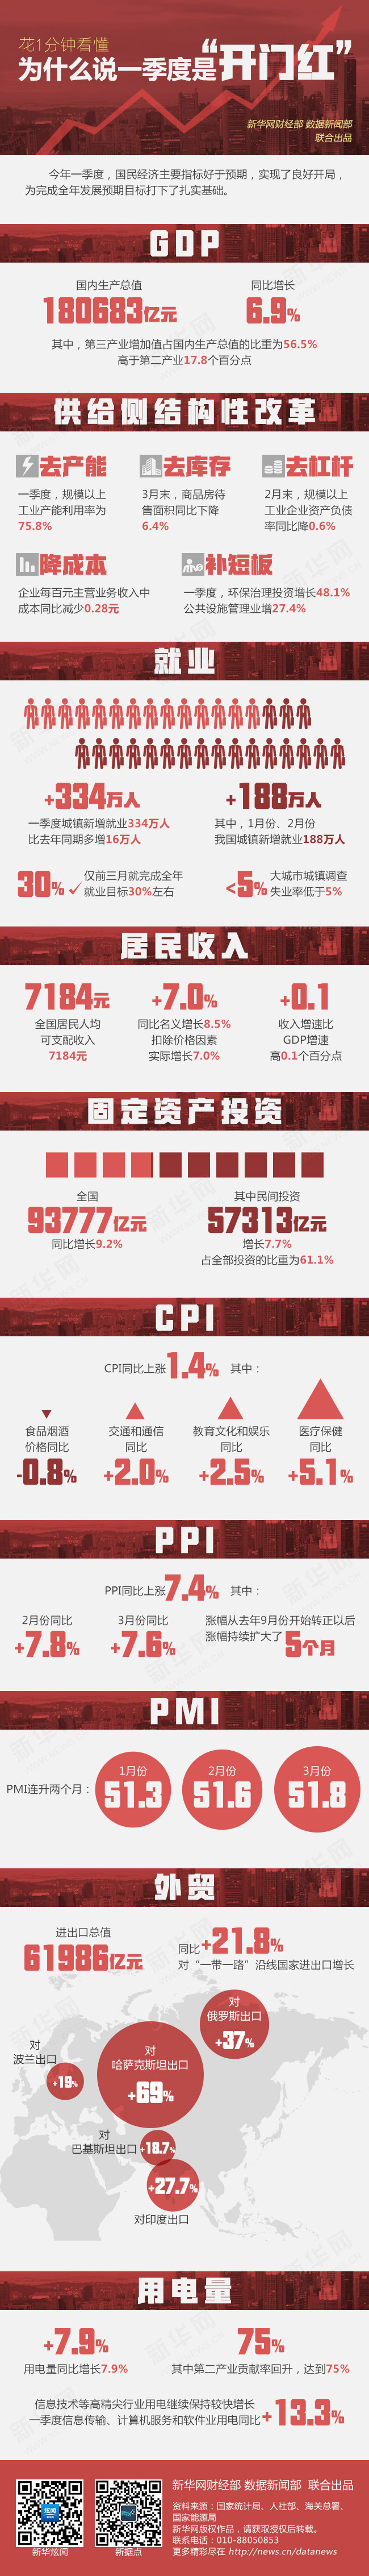 一季度GDP增长6.9% 中国经济“稳”字当头